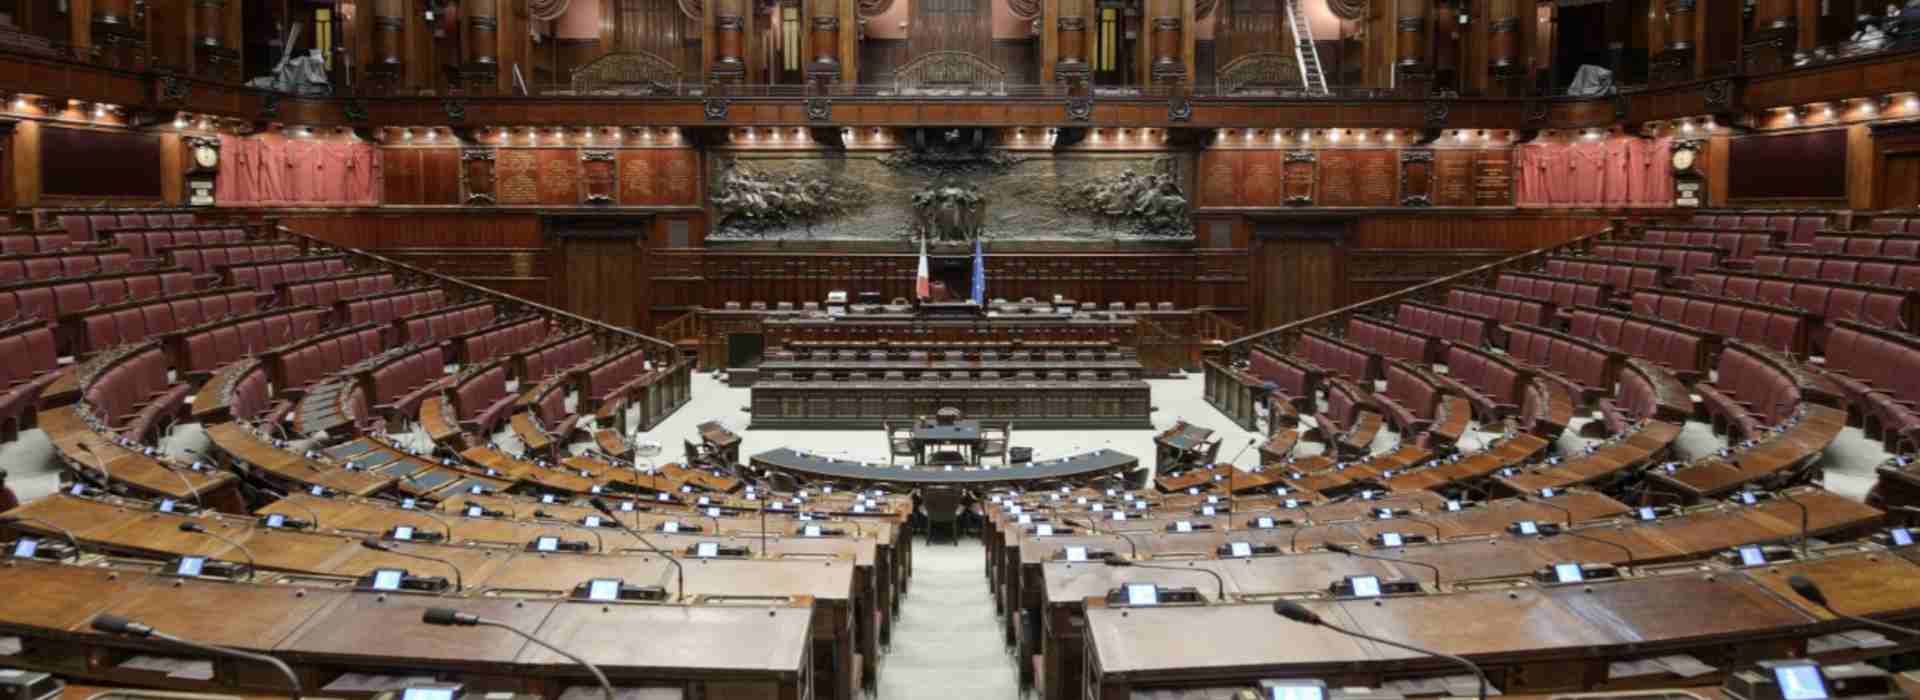 Il Piano di rinascita democratica di Licio Gelli vedrà il compimento con il taglio dei parlamentari